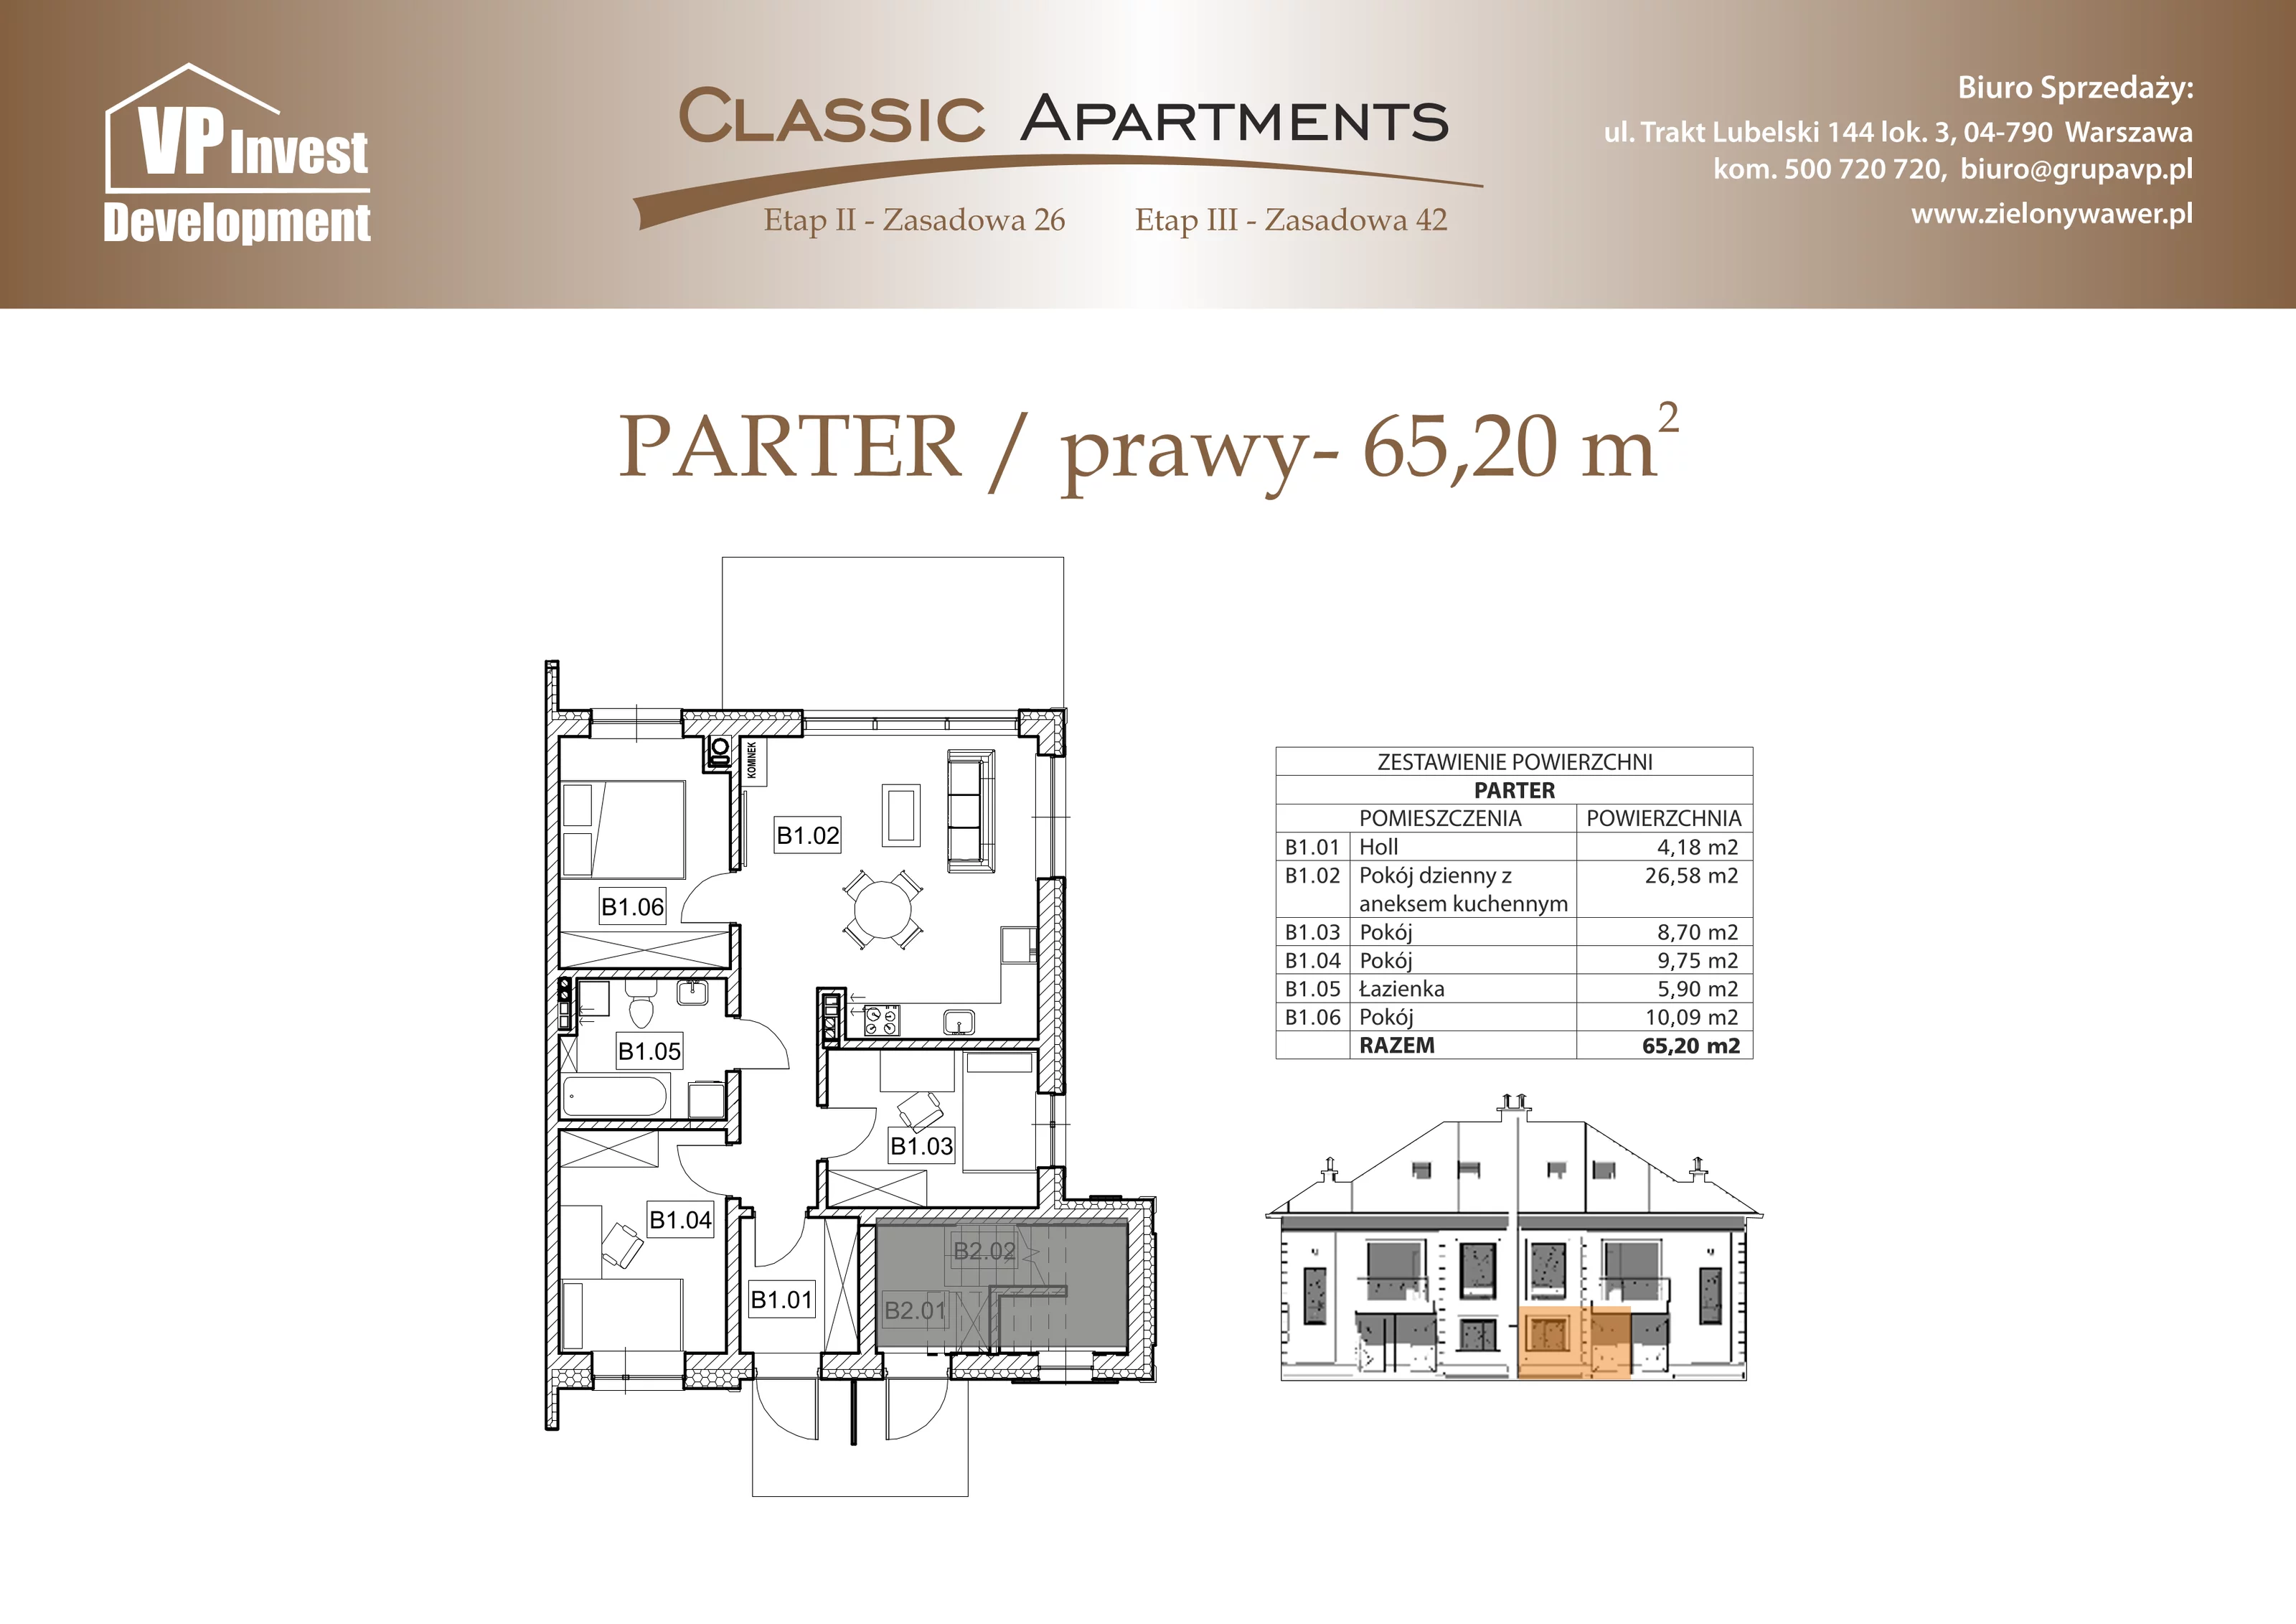 Apartament 65,20 m², parter, oferta nr CA6/14, Classic Apartments II, Warszawa, Wawer, Wawer, ul. Zasadowa 42